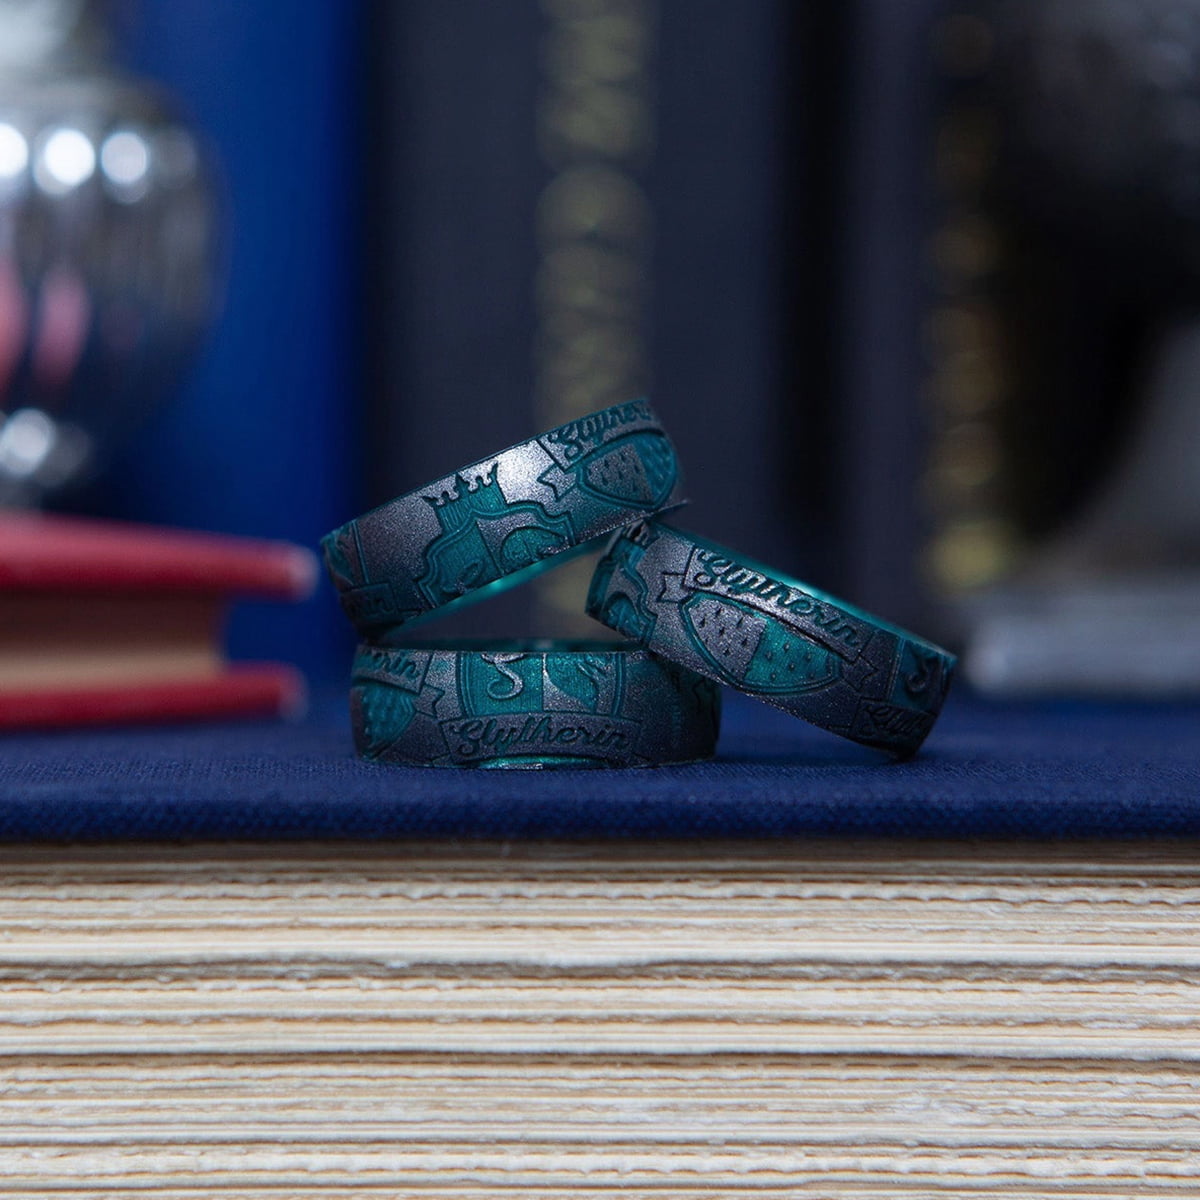 Harry Potter Gryffindor Crest Engraved Signet Ring By Badger & Brown.